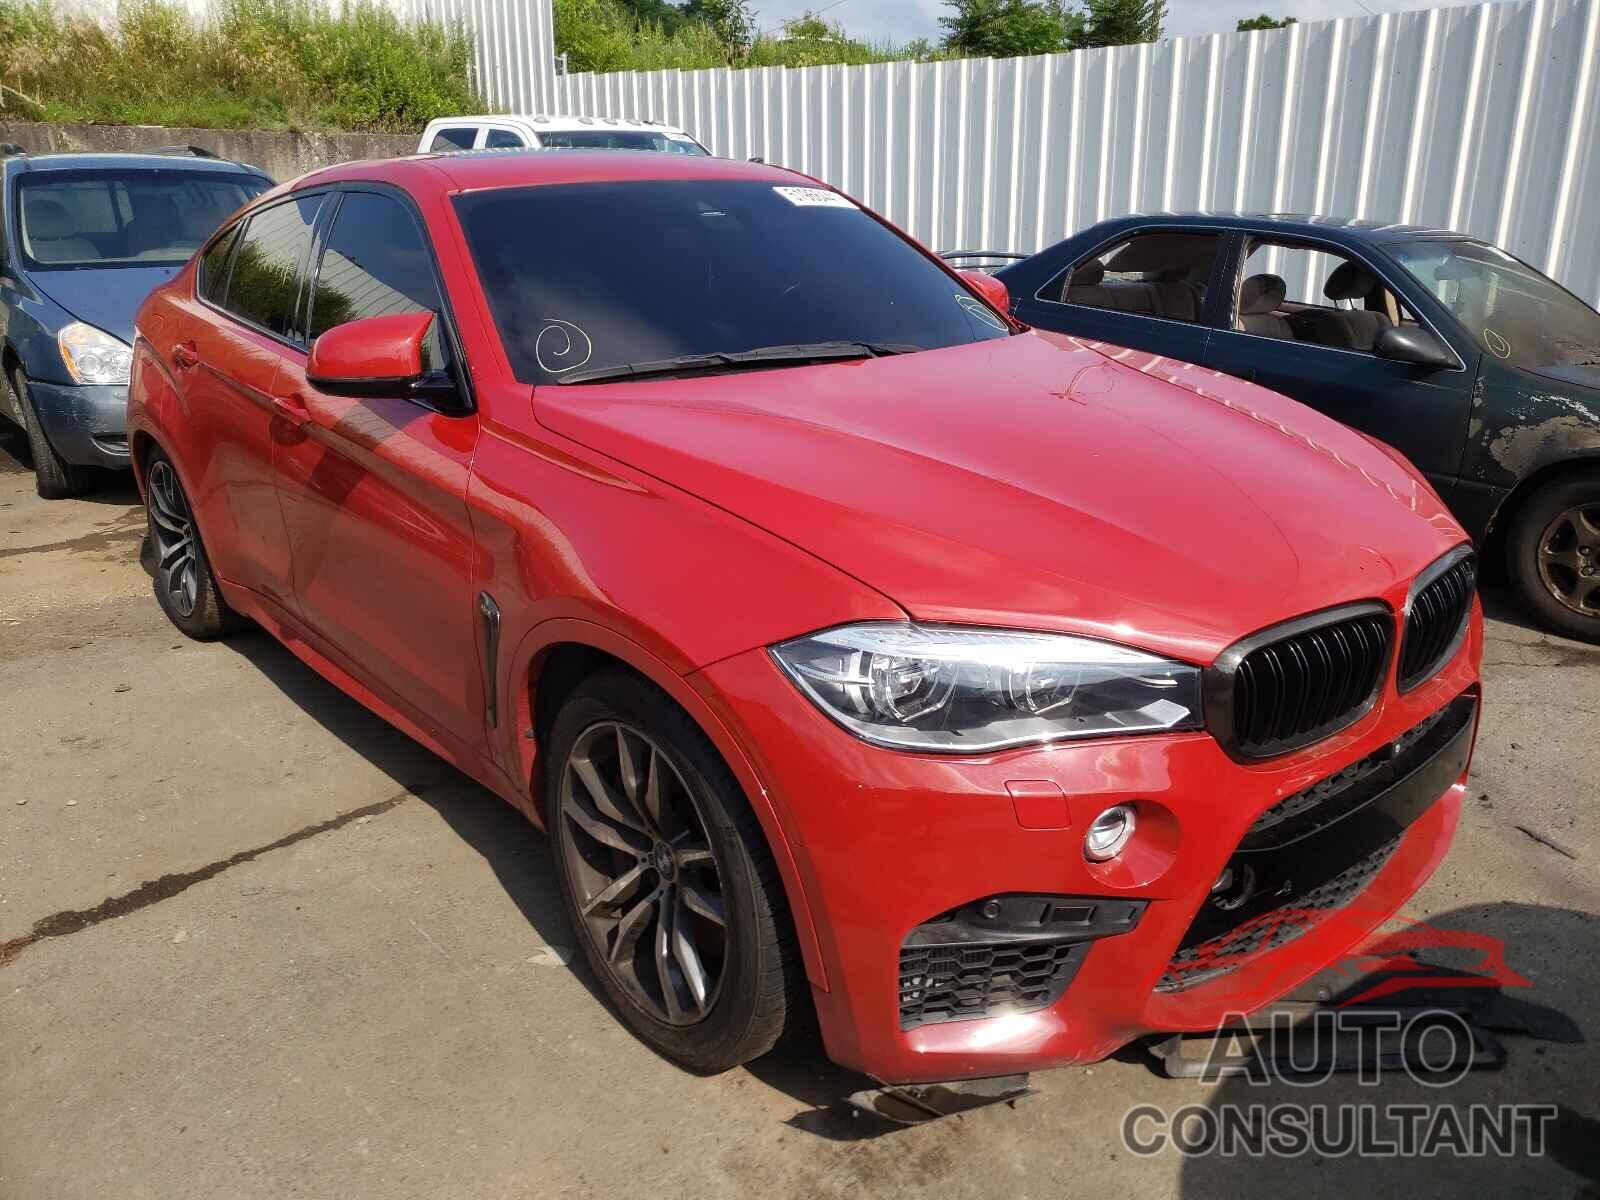 BMW X6 2016 - 5YMKW8C55G0R43001